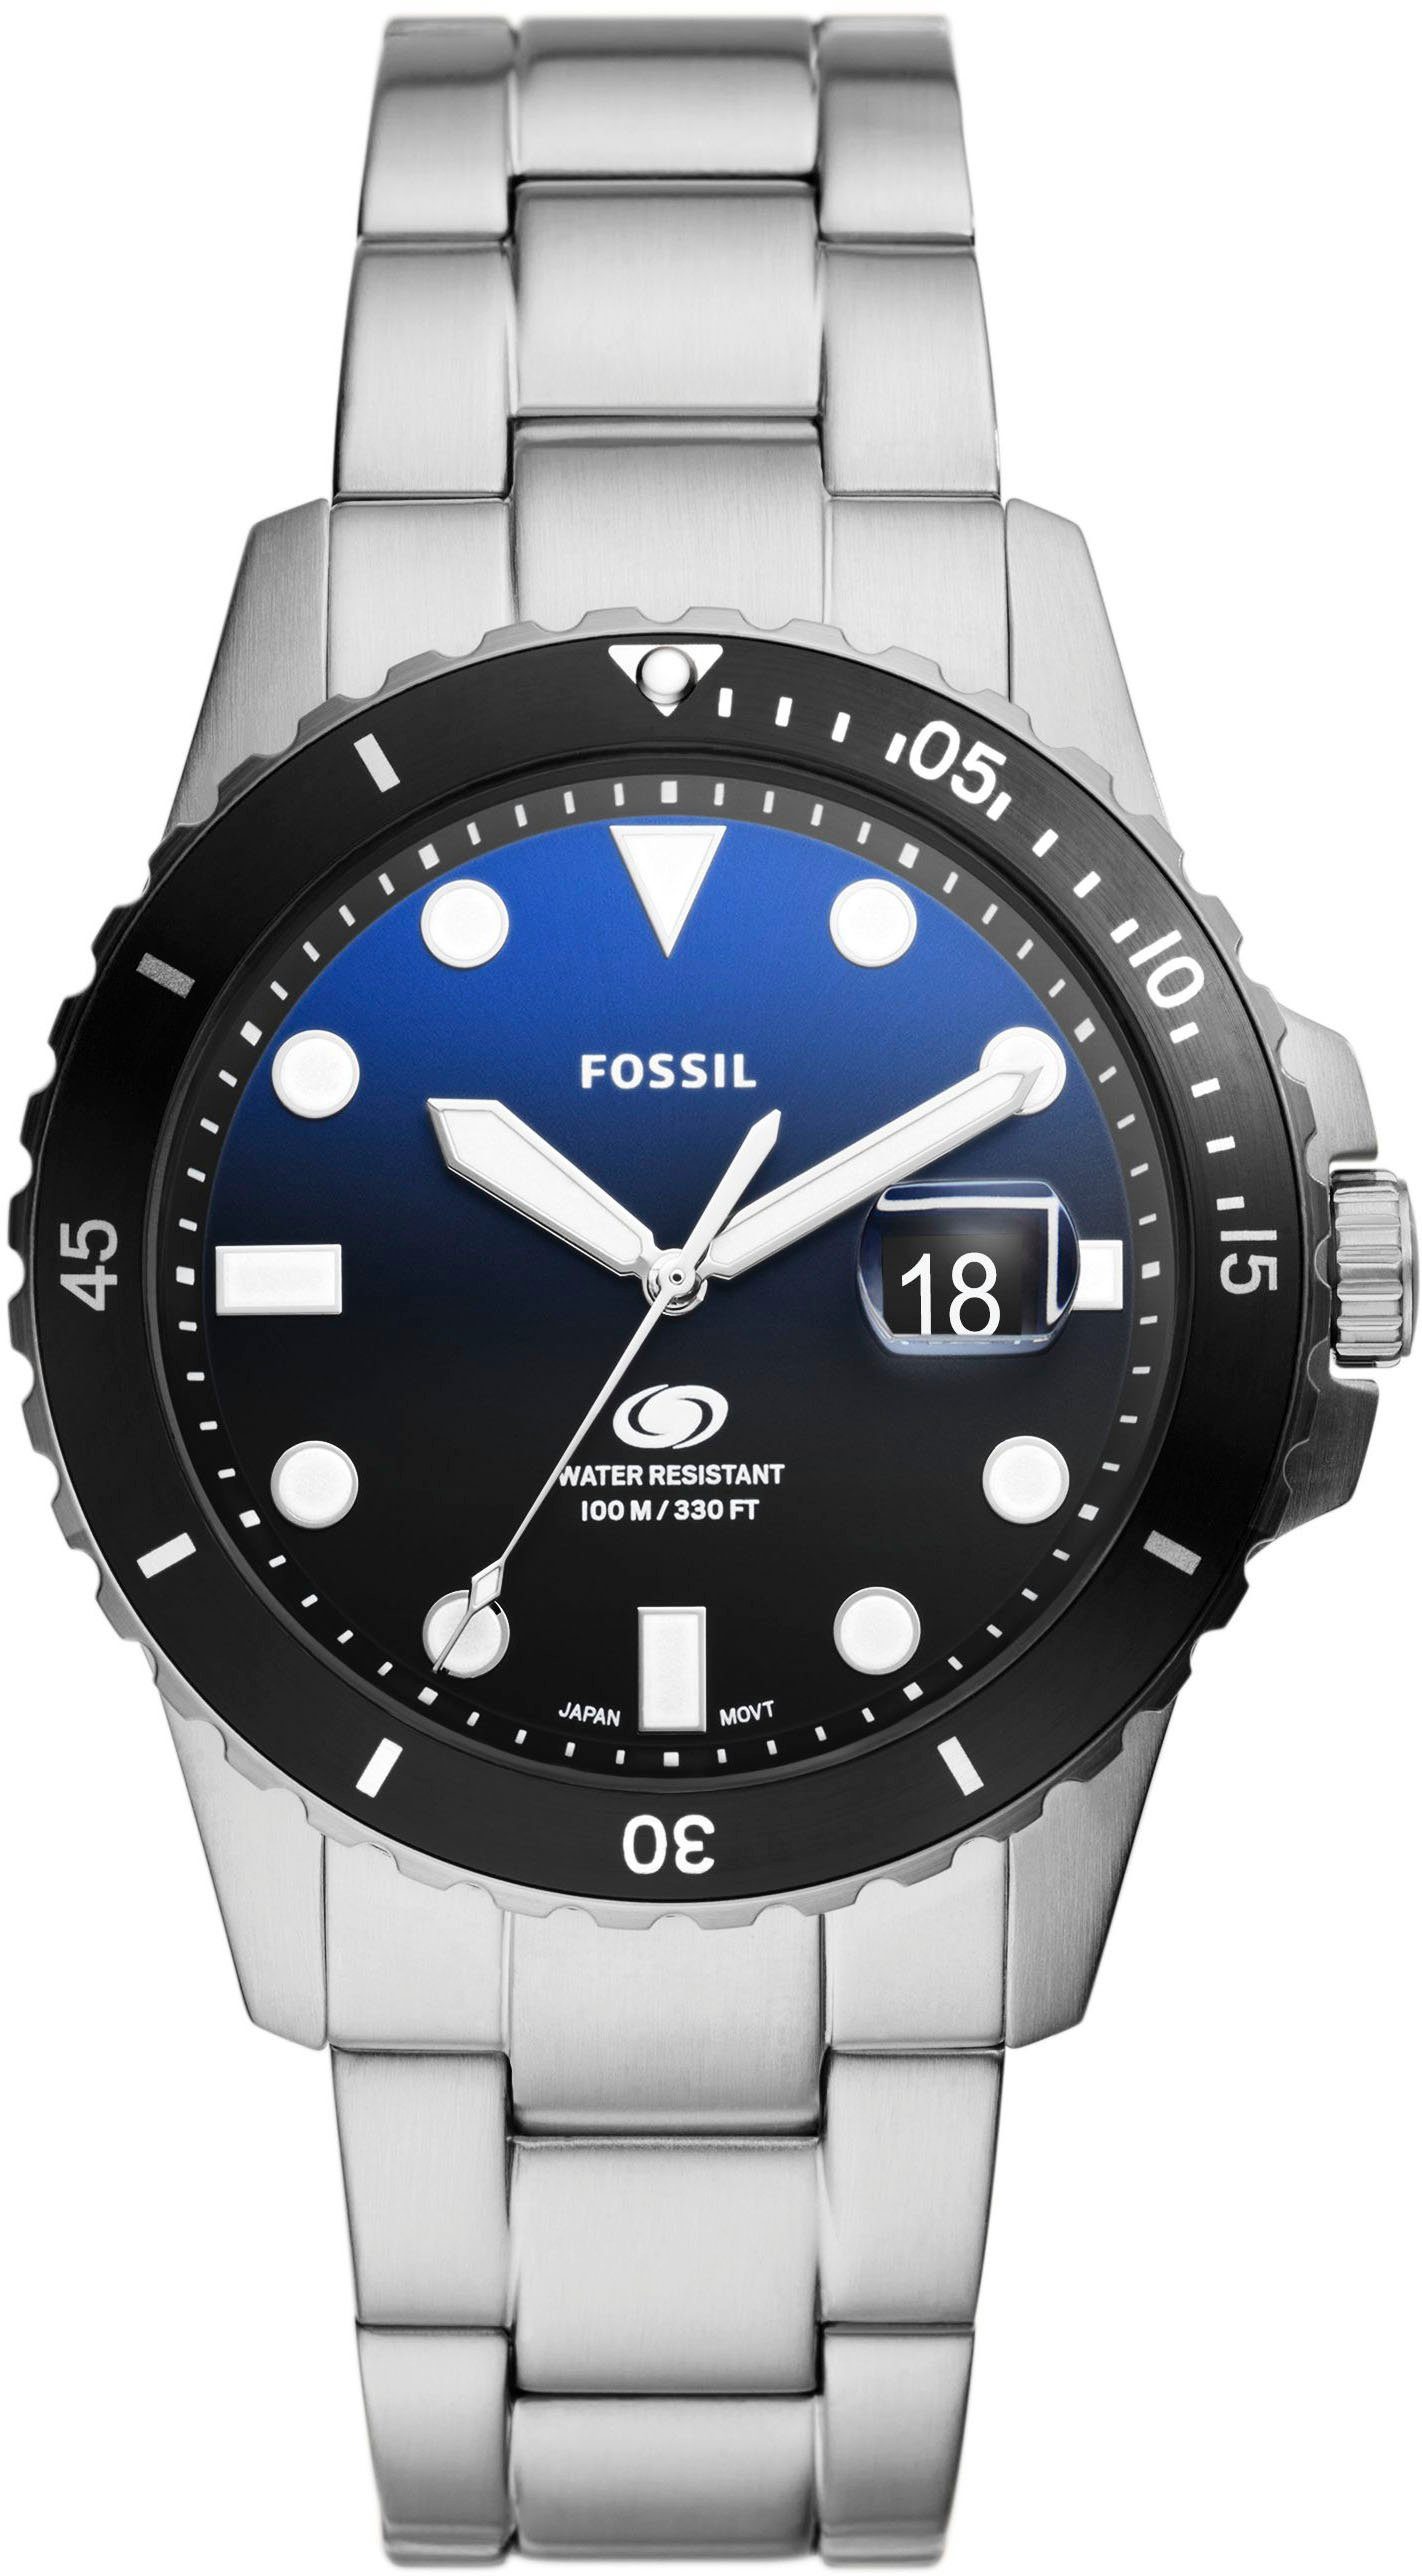 Fossil Quarzuhr FOSSIL BLUE DIVE, FS6038, Armbanduhr, Herrenuhr, Datum, analog